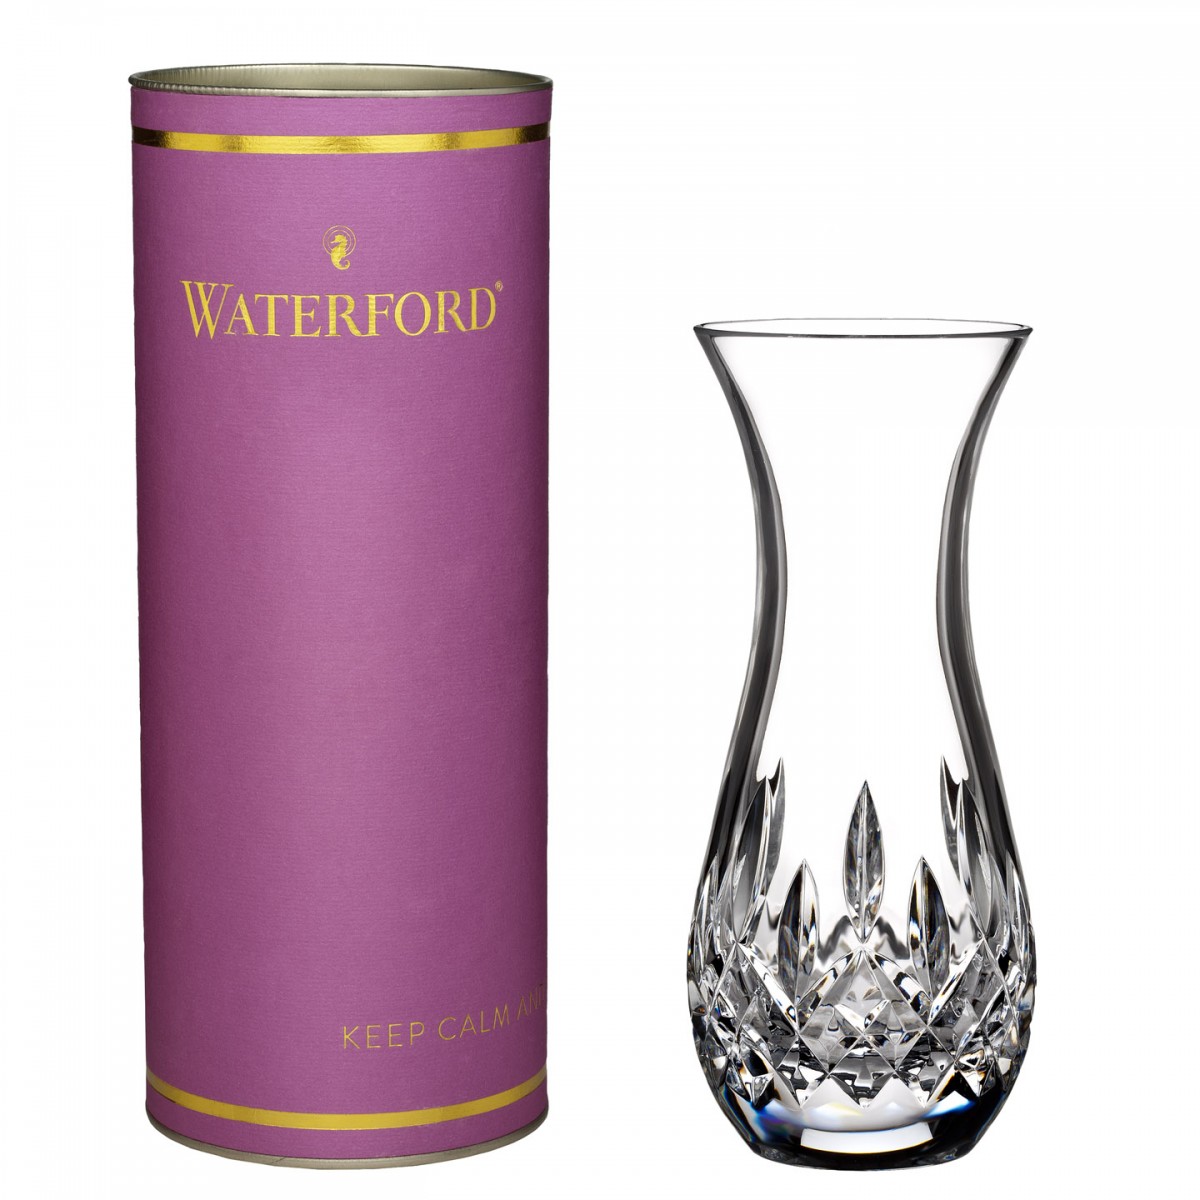 waterford-giftology-lismore-sugar-bud-vase-6-in-701587009416.jpg